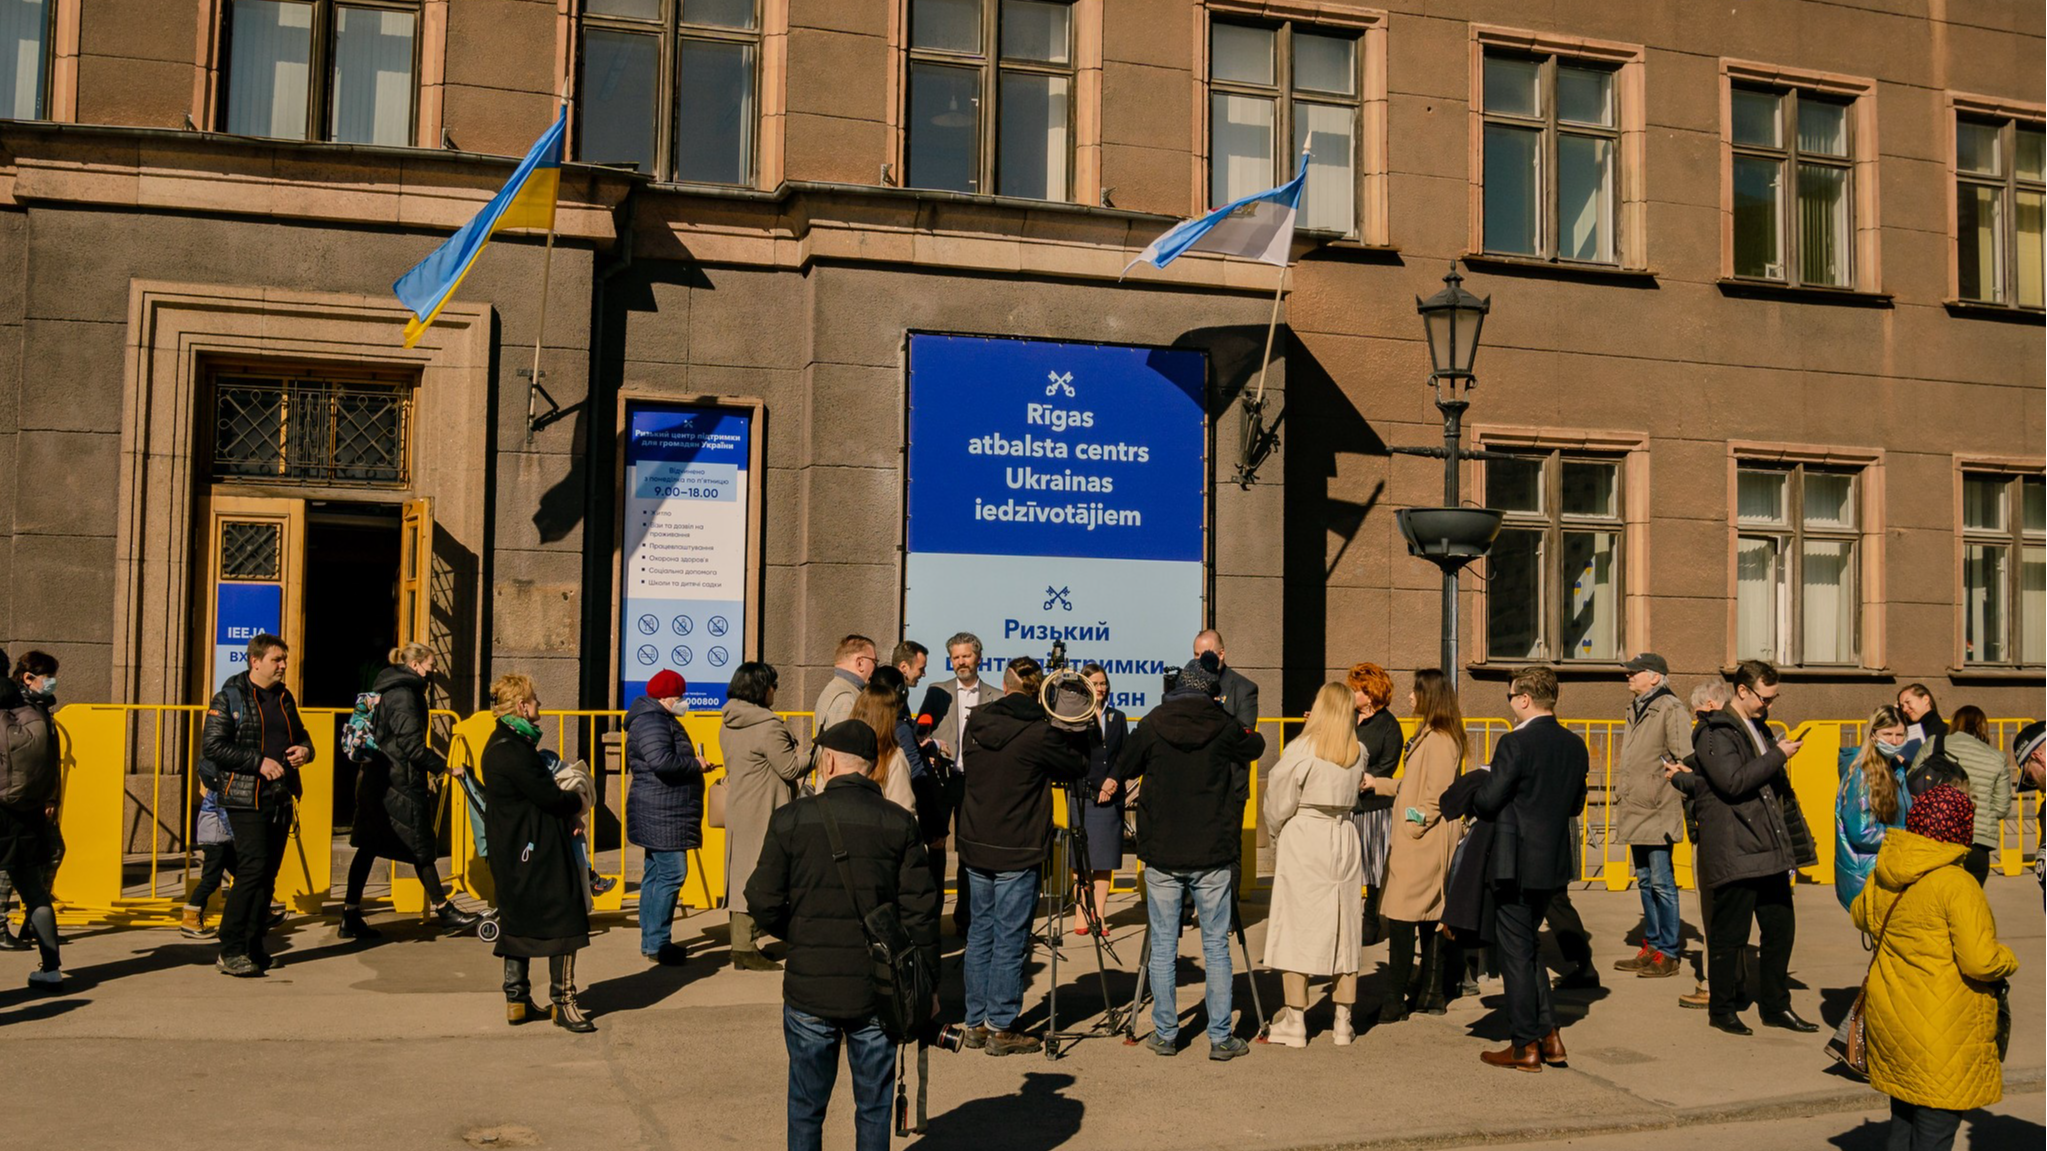 Rīgas atbalsta centrs Ukrainas iedzīvotājiem sāk darbu Kaļķu ielā 1